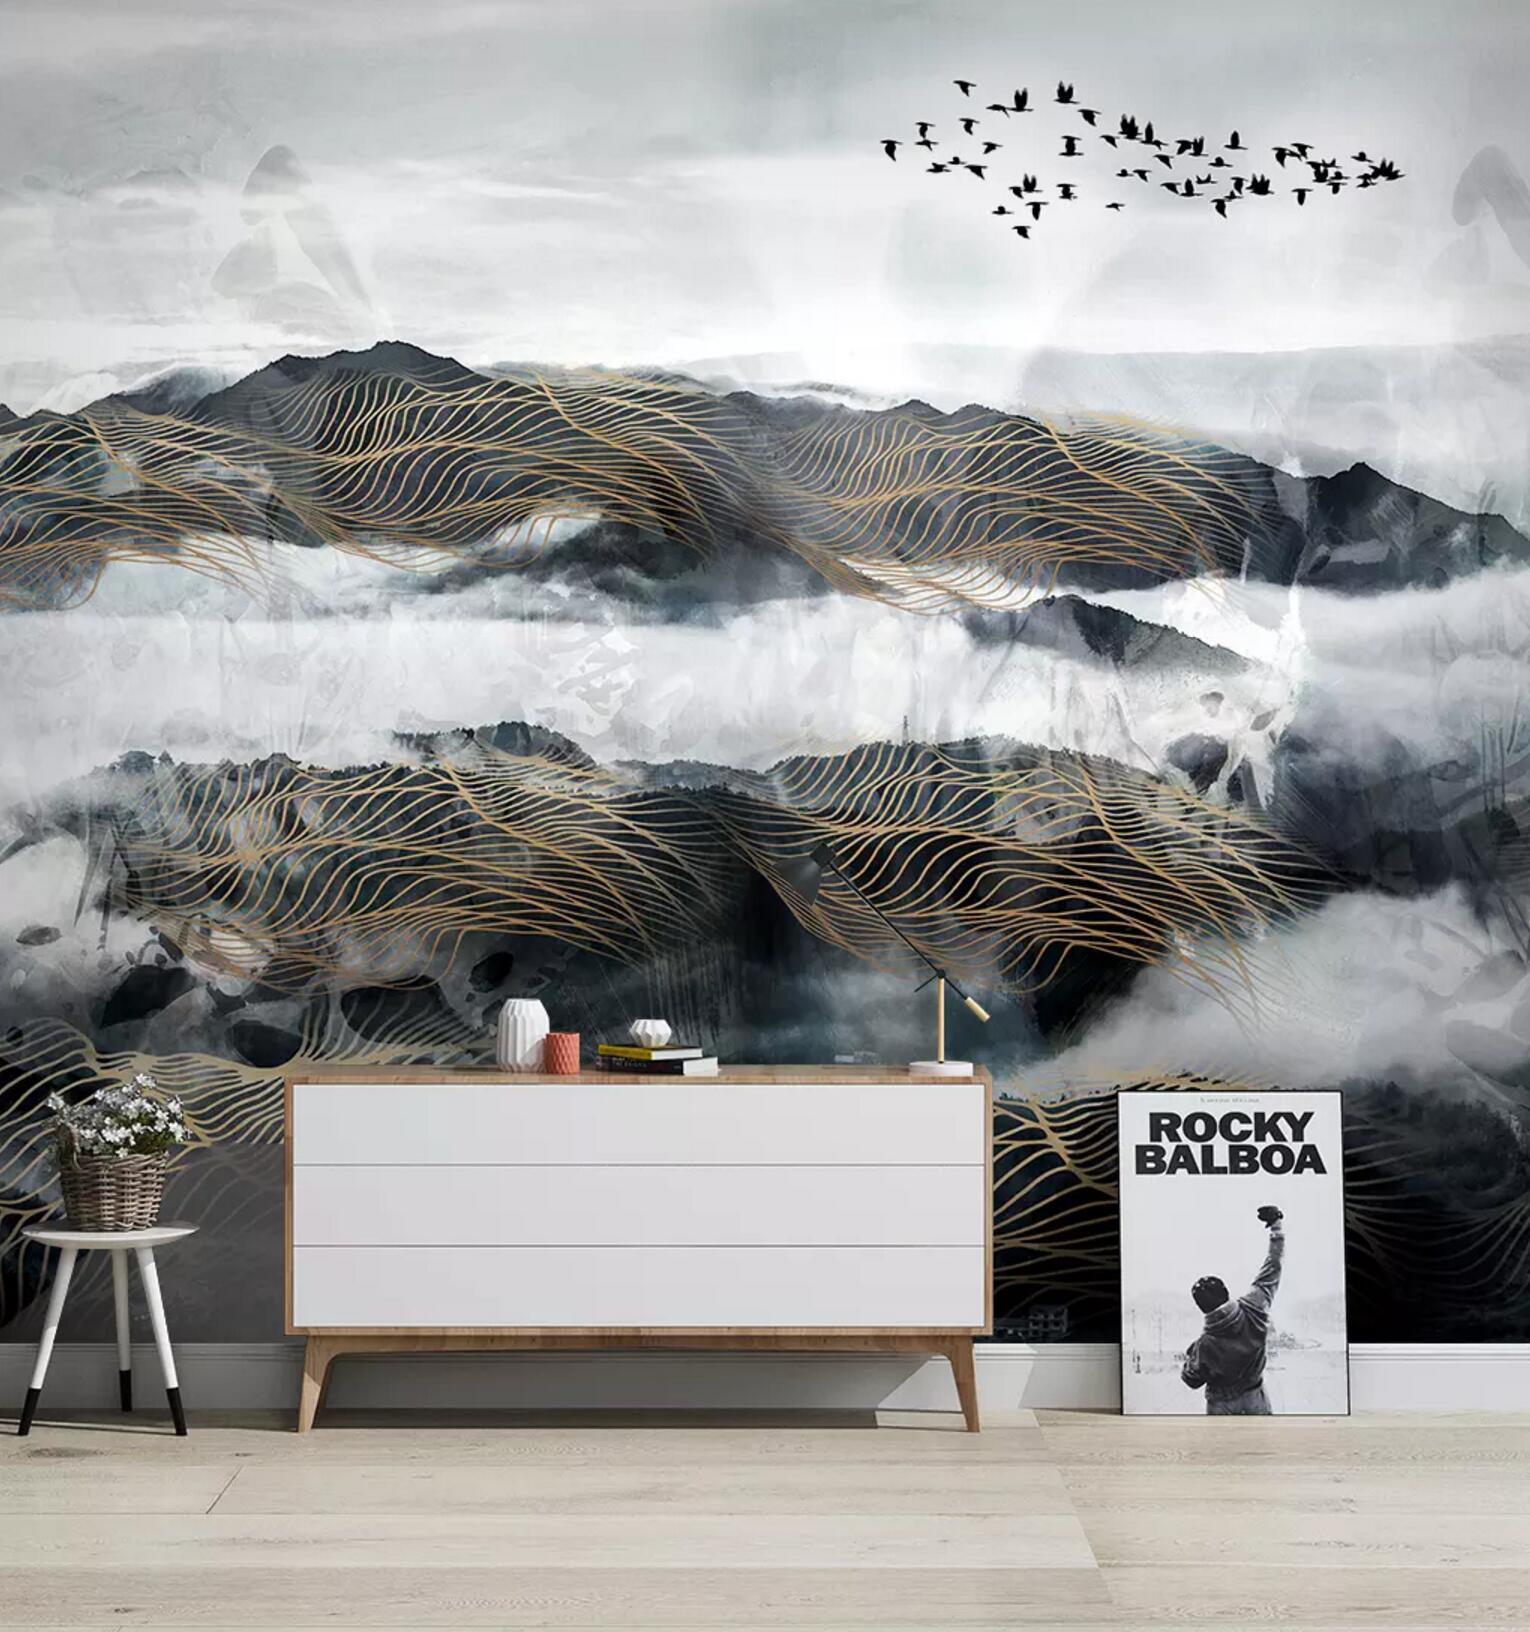 3D Virtual Mountain 308 Wallpaper AJ Wallpaper 